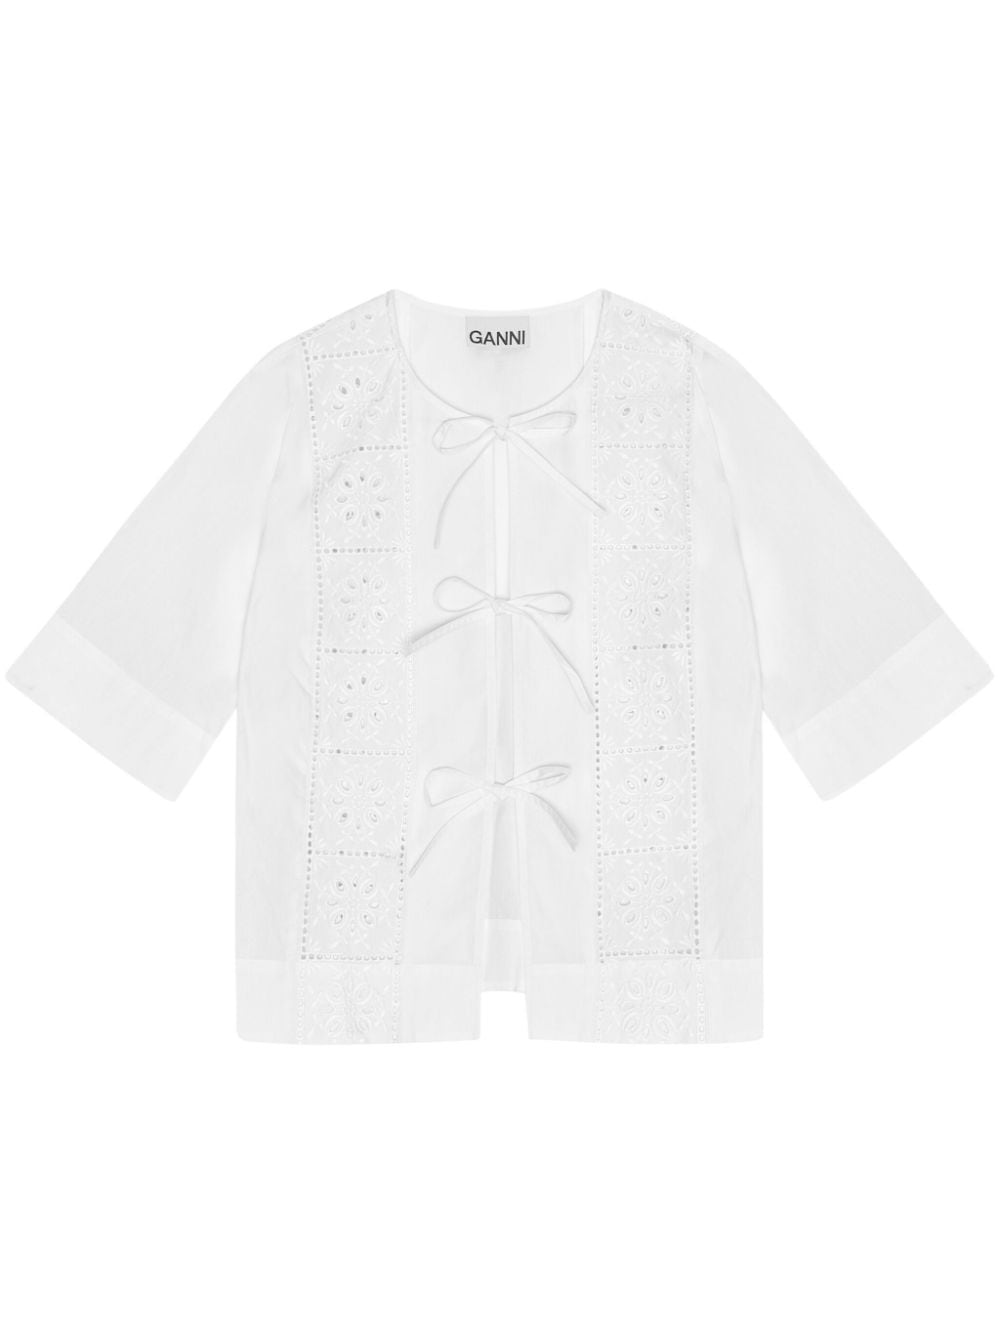 GANNI embroidered tie blouse - White von GANNI